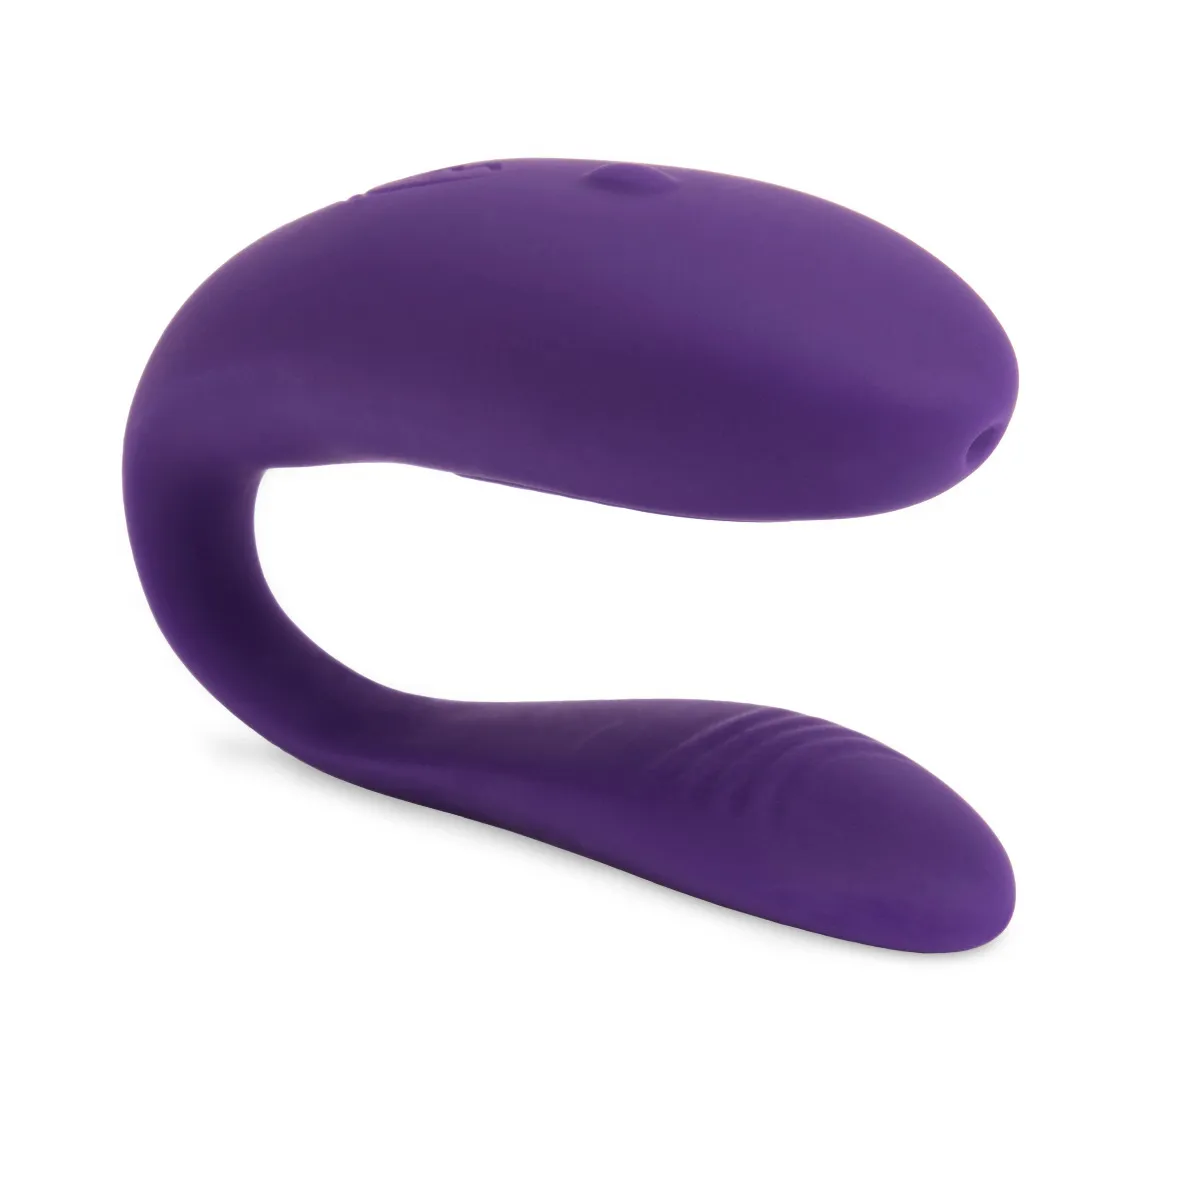 We-Vibe Unite purple couples vibrator